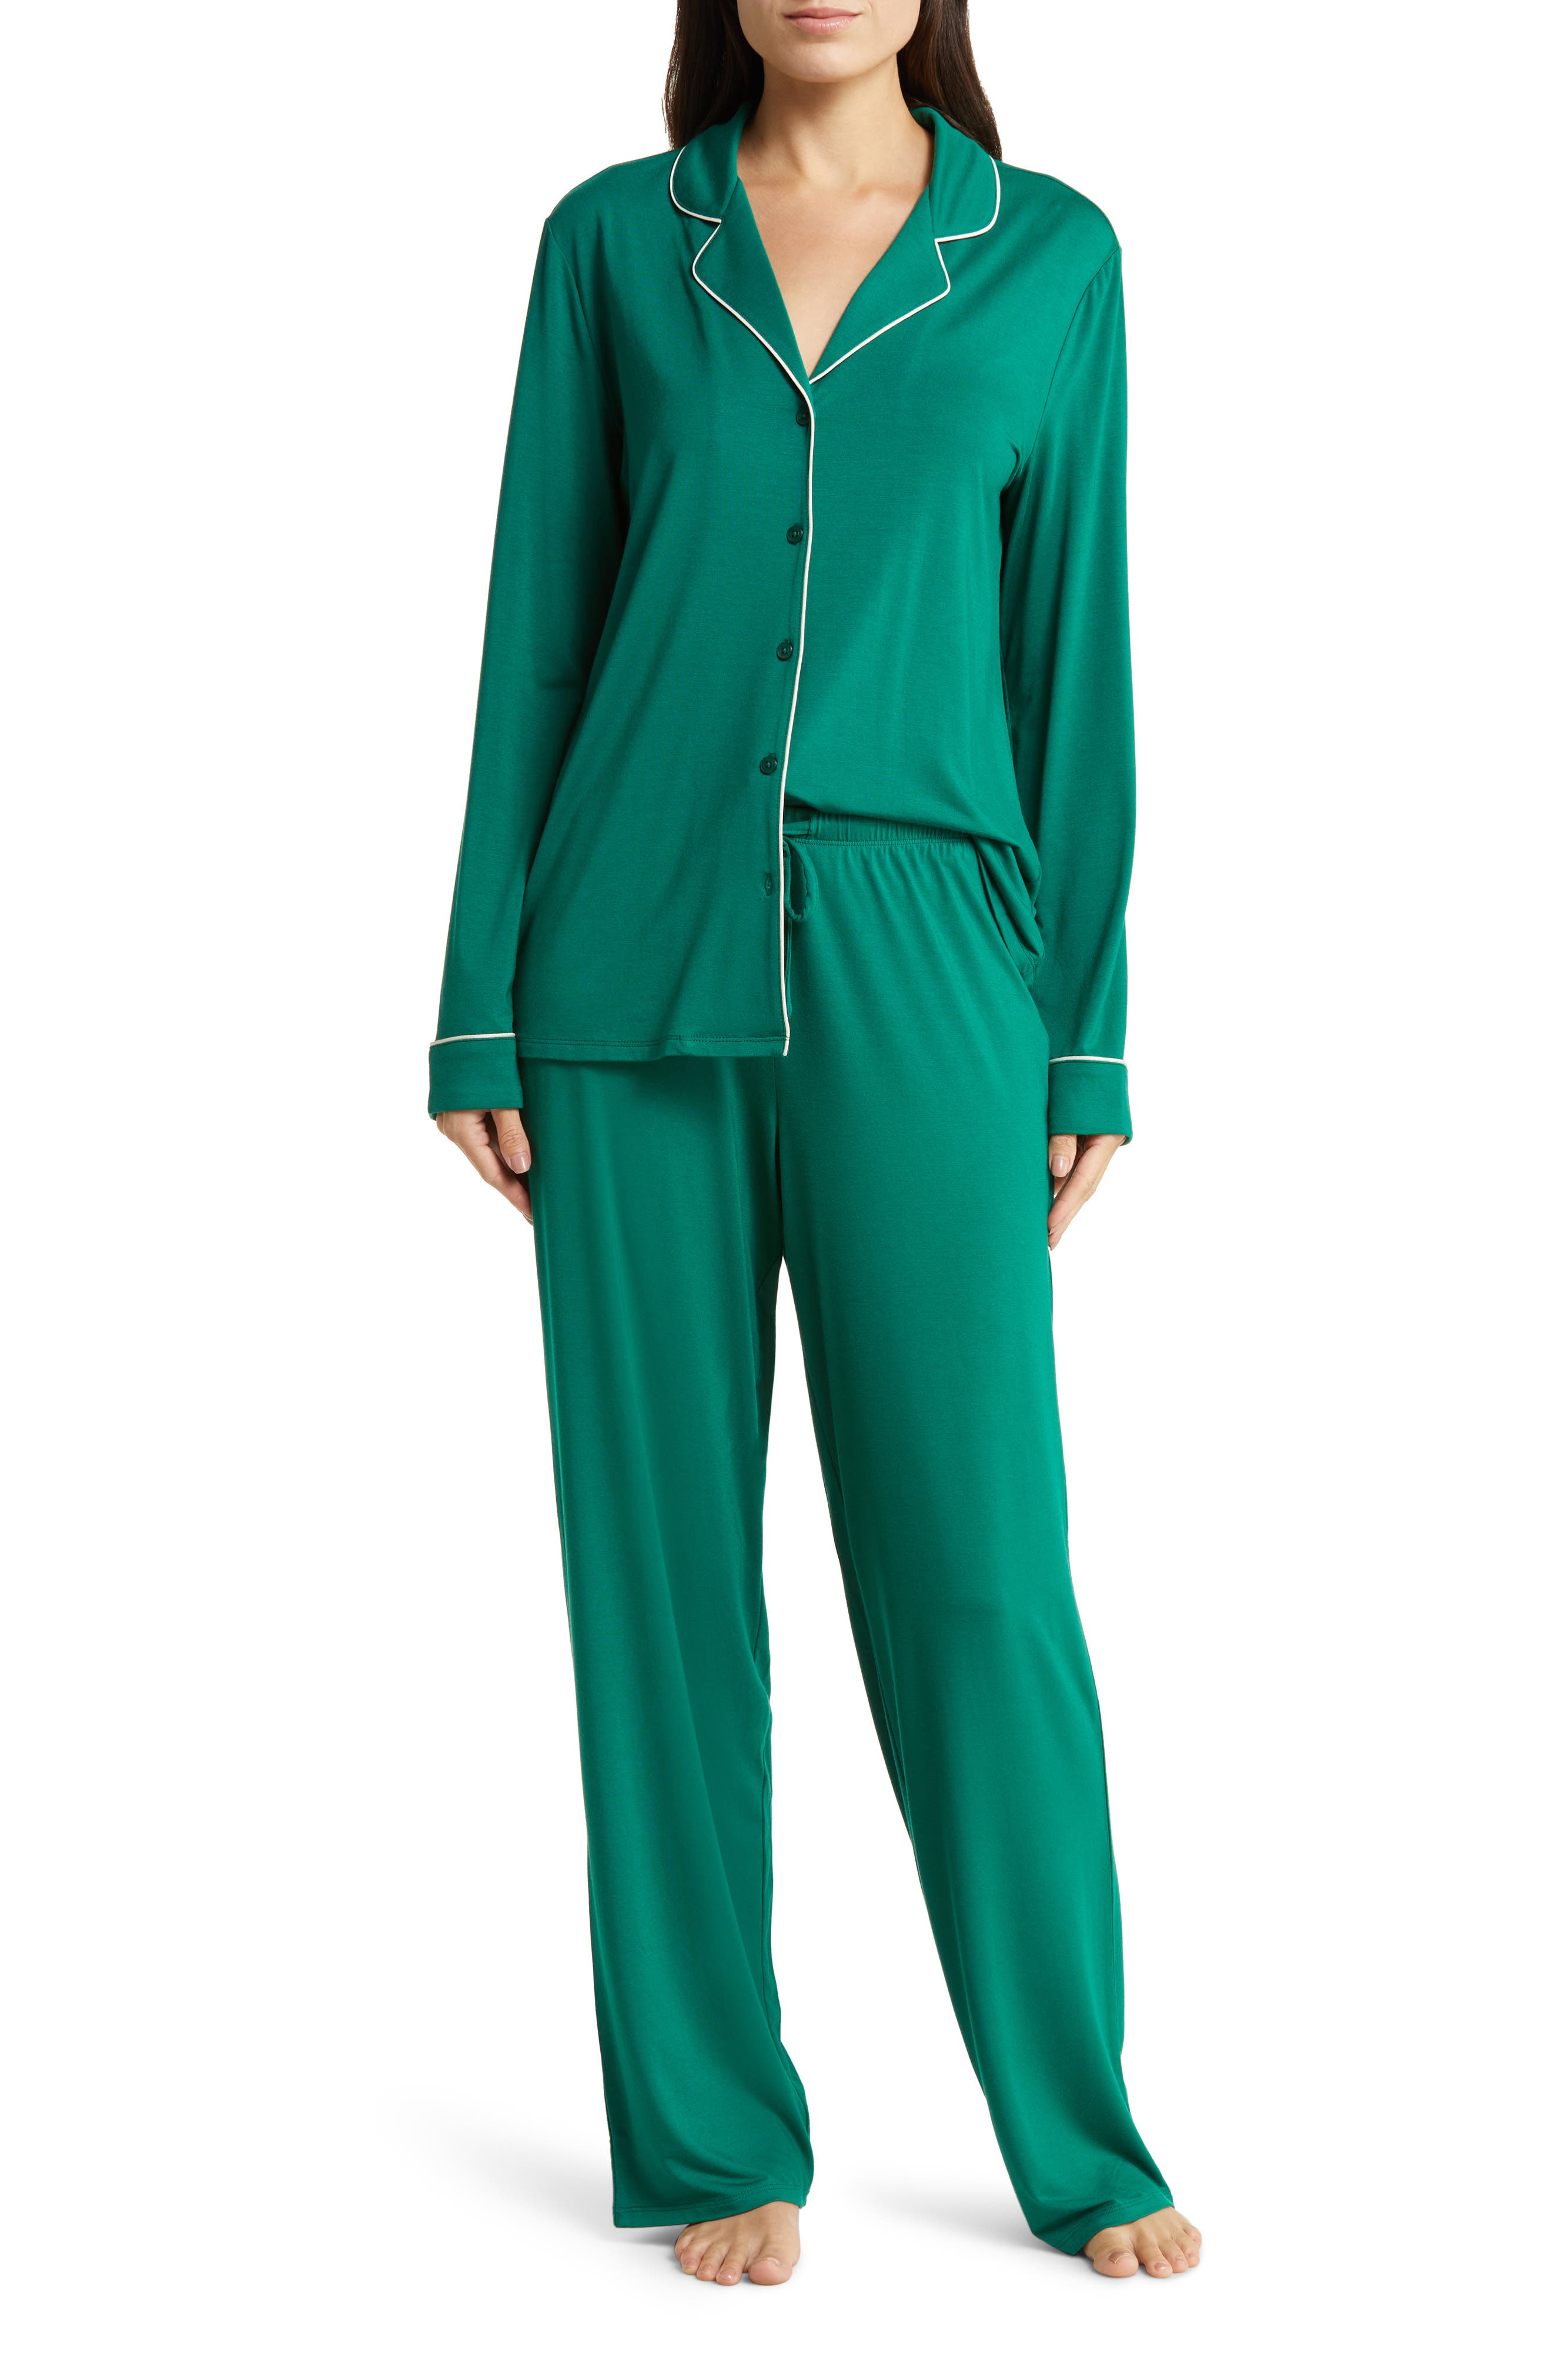 TWINSET UNDERWEAR Lace Sleepwear in Light Green Womens Clothing Nightwear and sleepwear Pyjamas Green 